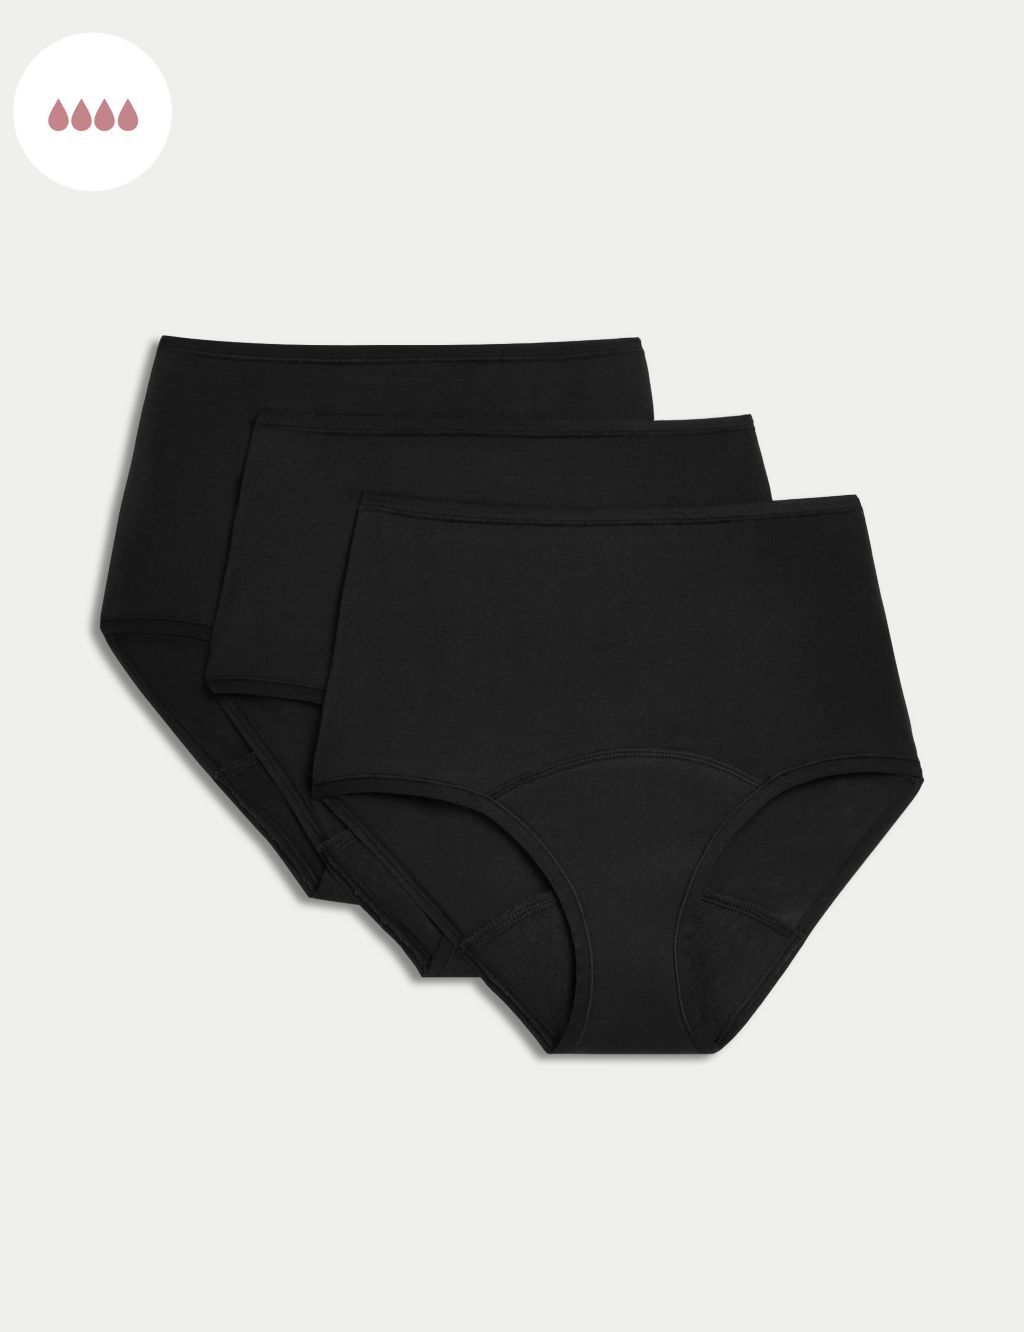 Women Menstrual Leakproof Panties High Waist Period Protective Easy Clean  Briefs Postpartum Underwear 3 Pack Black XX-Large price in UAE,  UAE